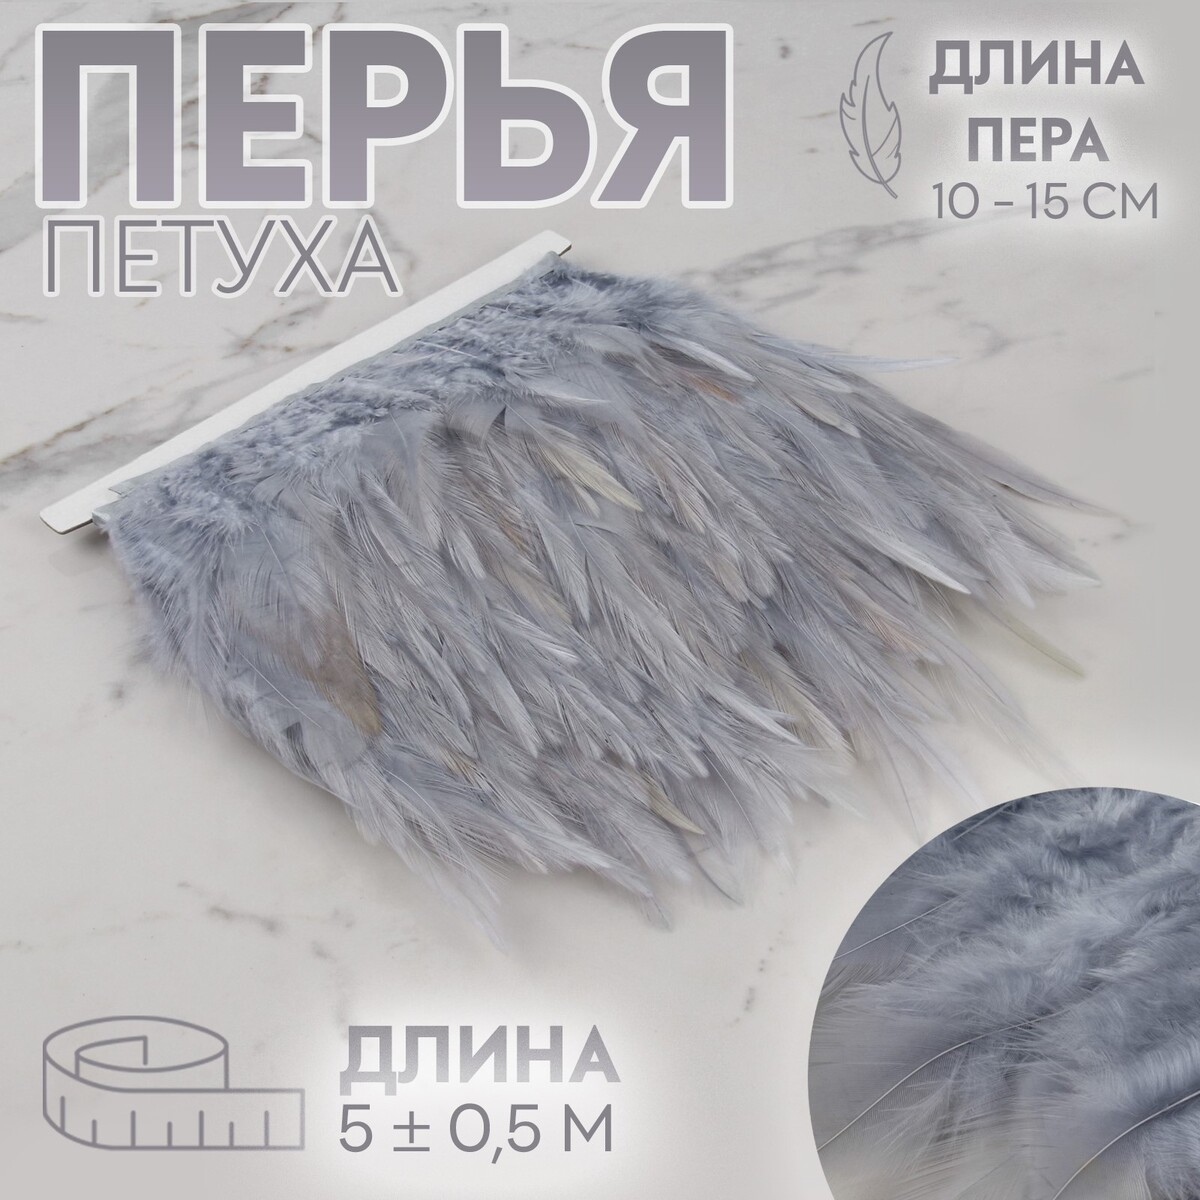 Тесьма с перьями петуха, 10-15 см, 5 ± 0,5 м, цвет серый тесьма с перьями страуса 8 10 см 5 ± 0 5 м слоновая кость